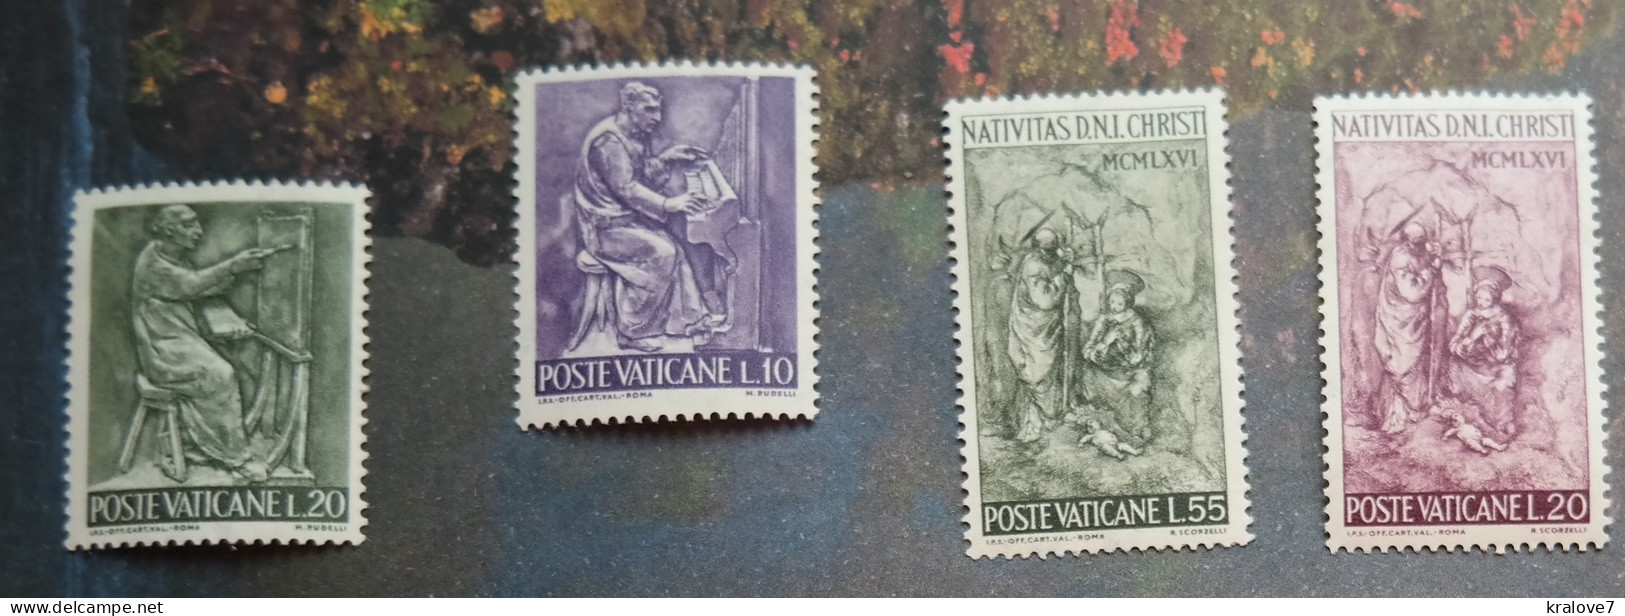 VATICAN 1964 NOEL NATIVITAS MNH HOLY SEE CHRISTMAS - Unused Stamps